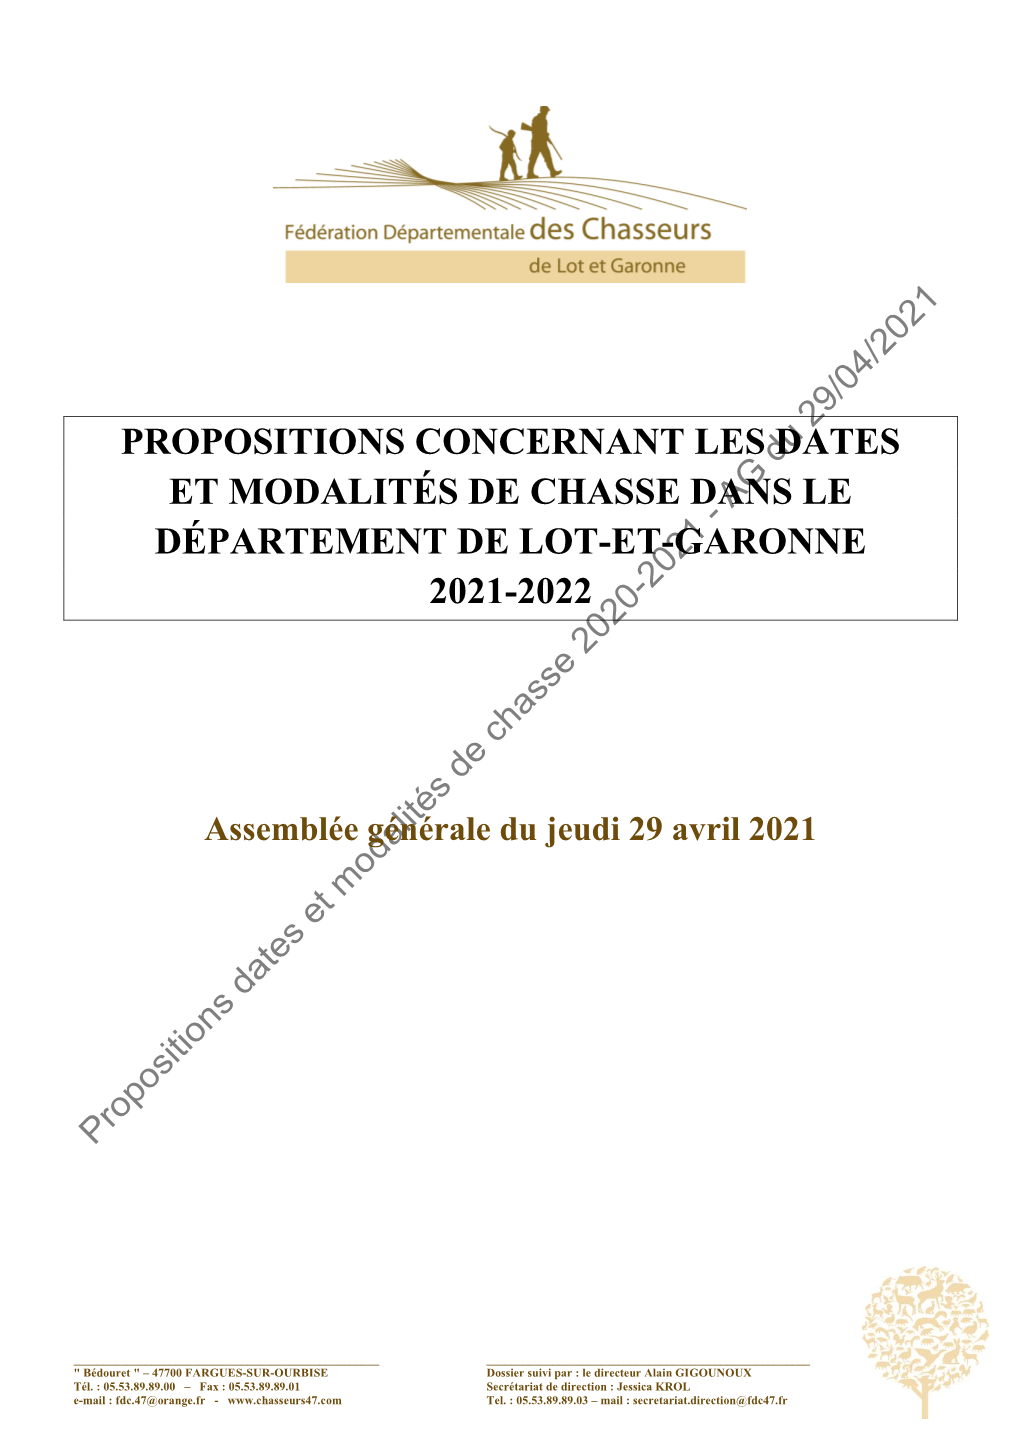 Propositions Concernant Les Dates Et Modalités De Chasse Dans Le Département De Lot-Et-Garonne 2021-2022